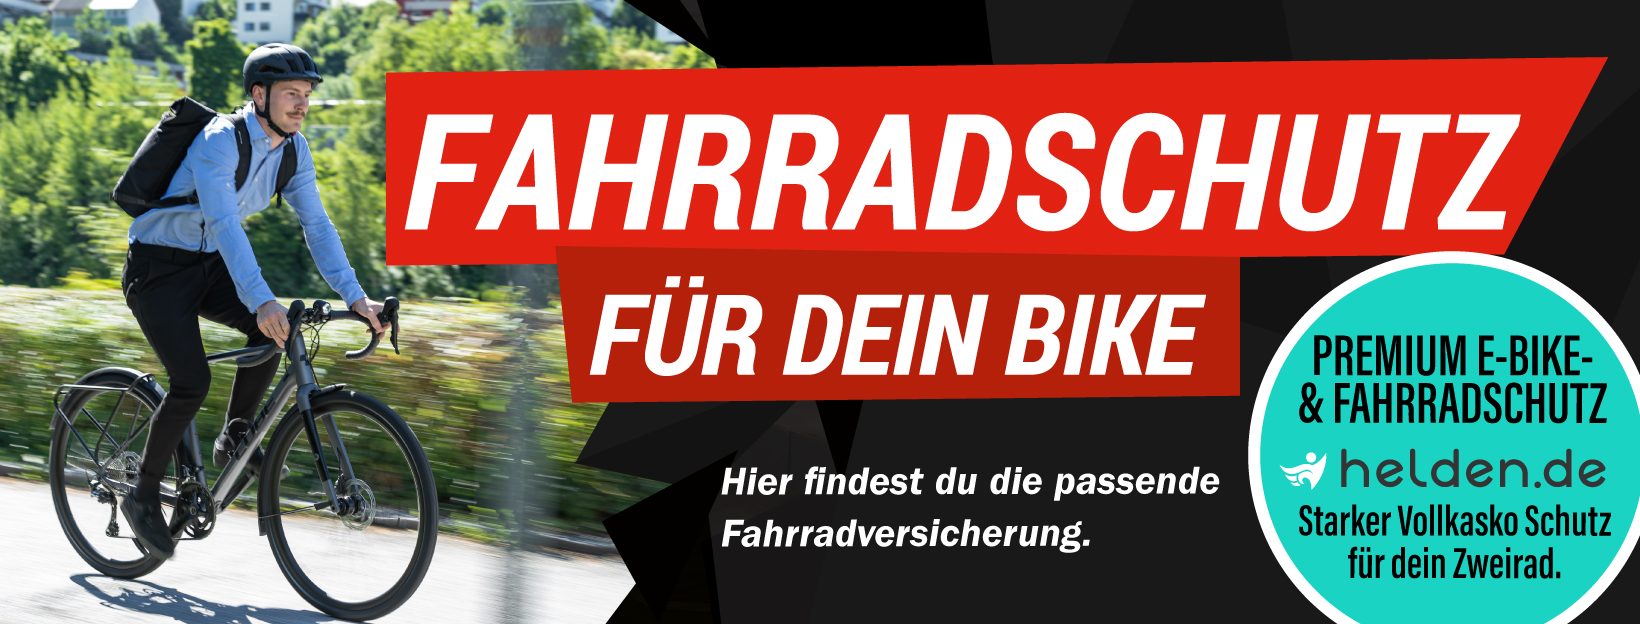 Fahrradversicherung von helden.de im CUBE Store